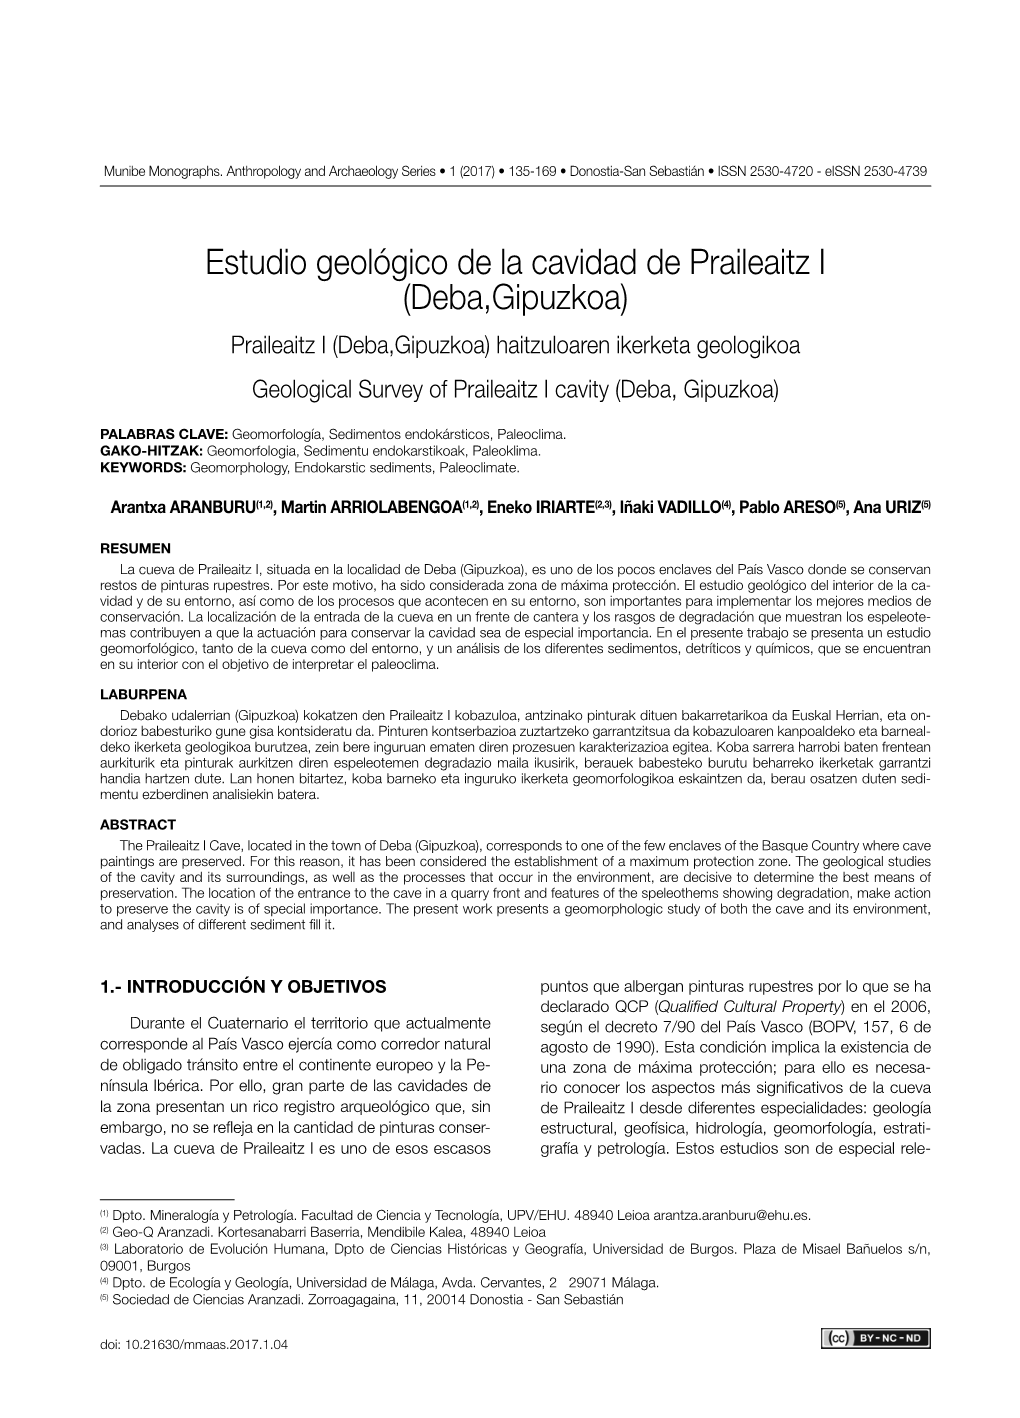 Estudio Geológico De La Cavidad De Praileaitz I (Deba,Gipuzkoa)